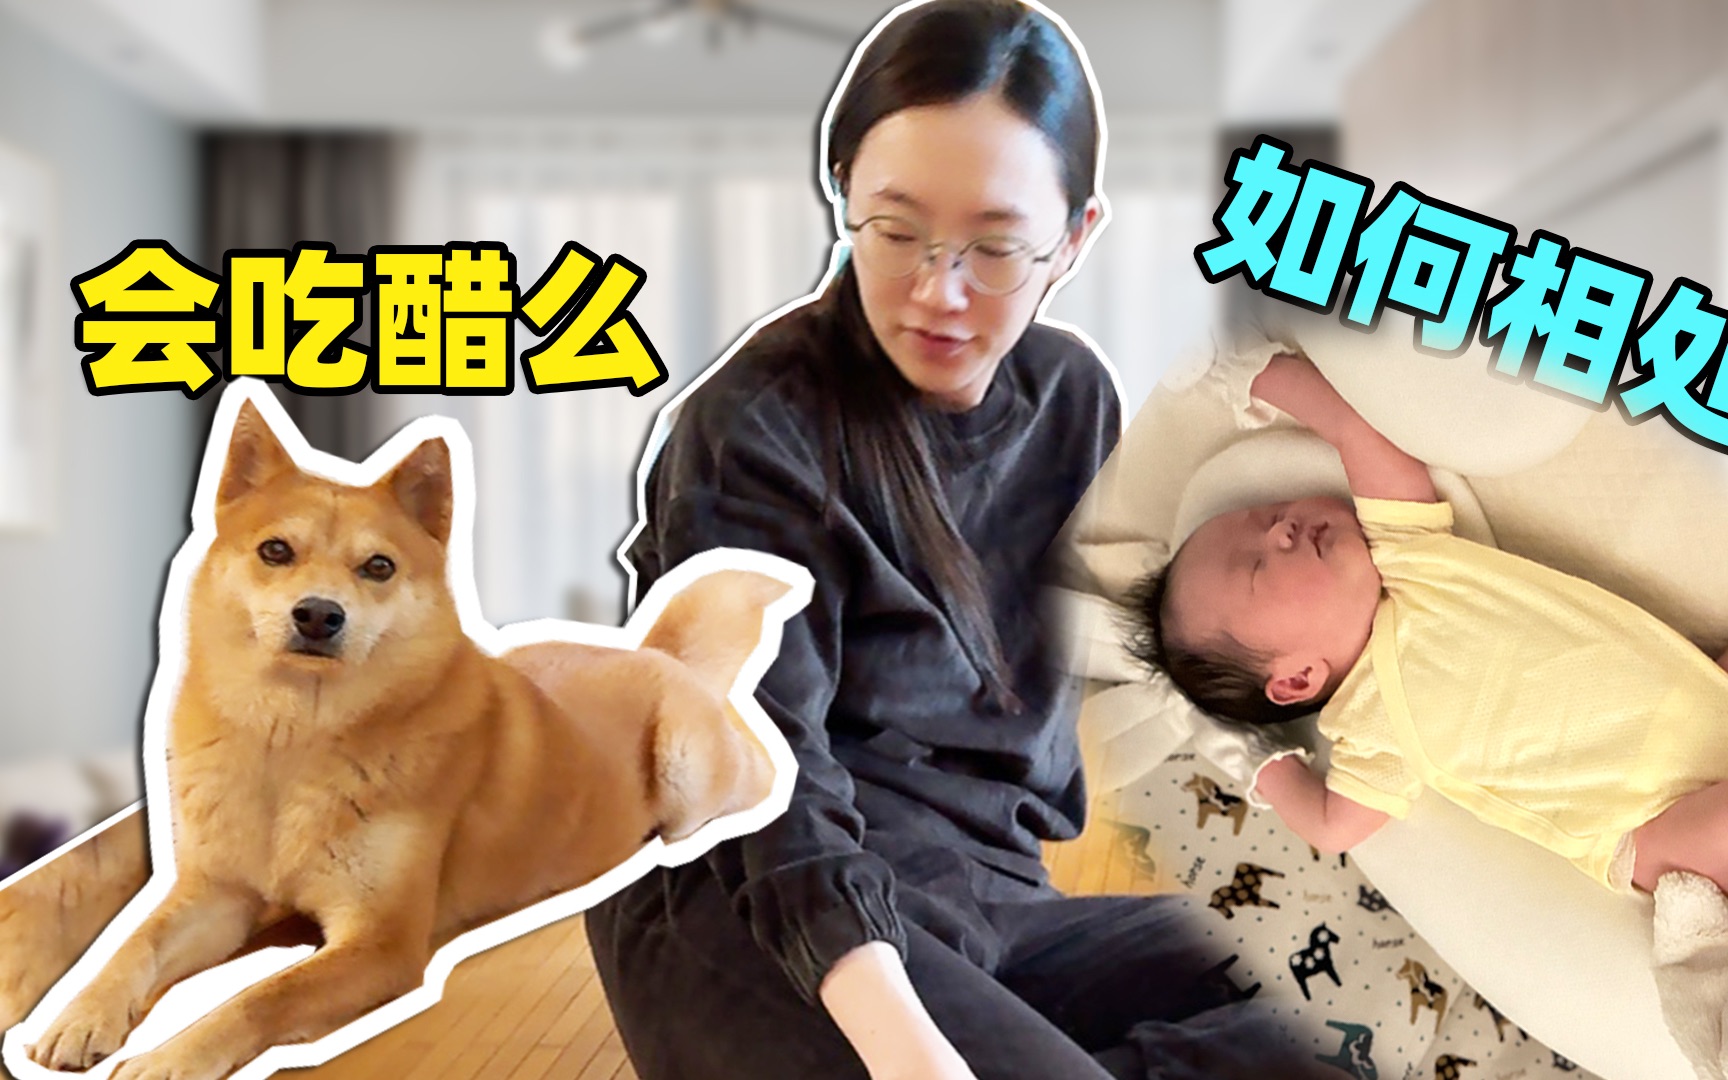 带刚出生的宝宝回家，狗子好像吃醋了，未来如何相处？